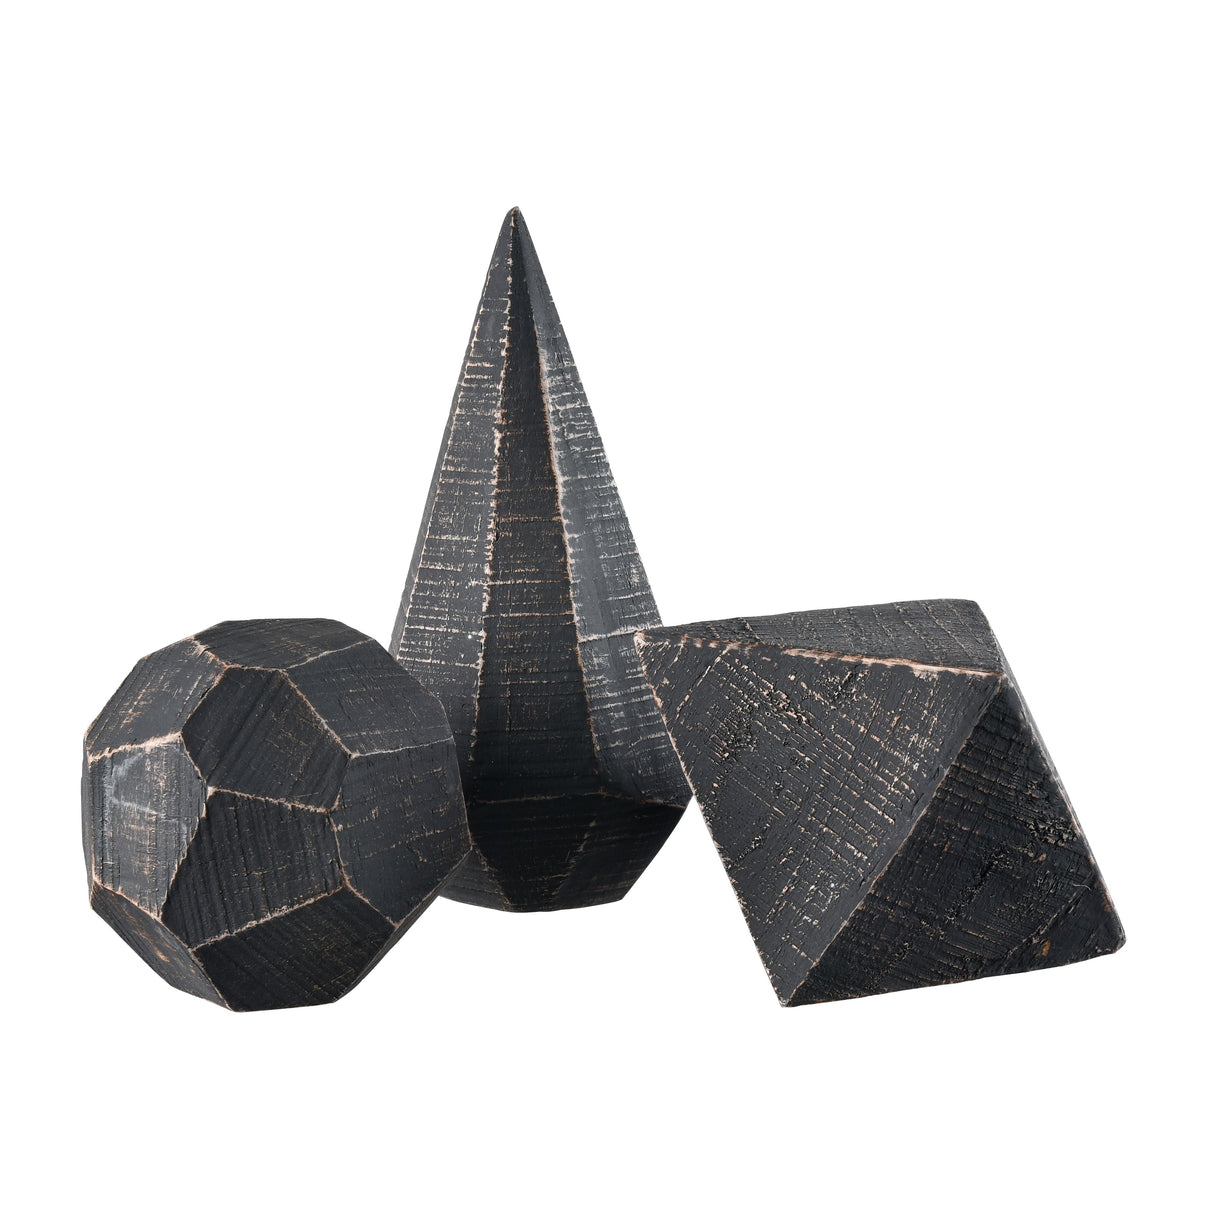 Elk S0037-9174/S3 Copas Decorative Object - Set of 3 Black